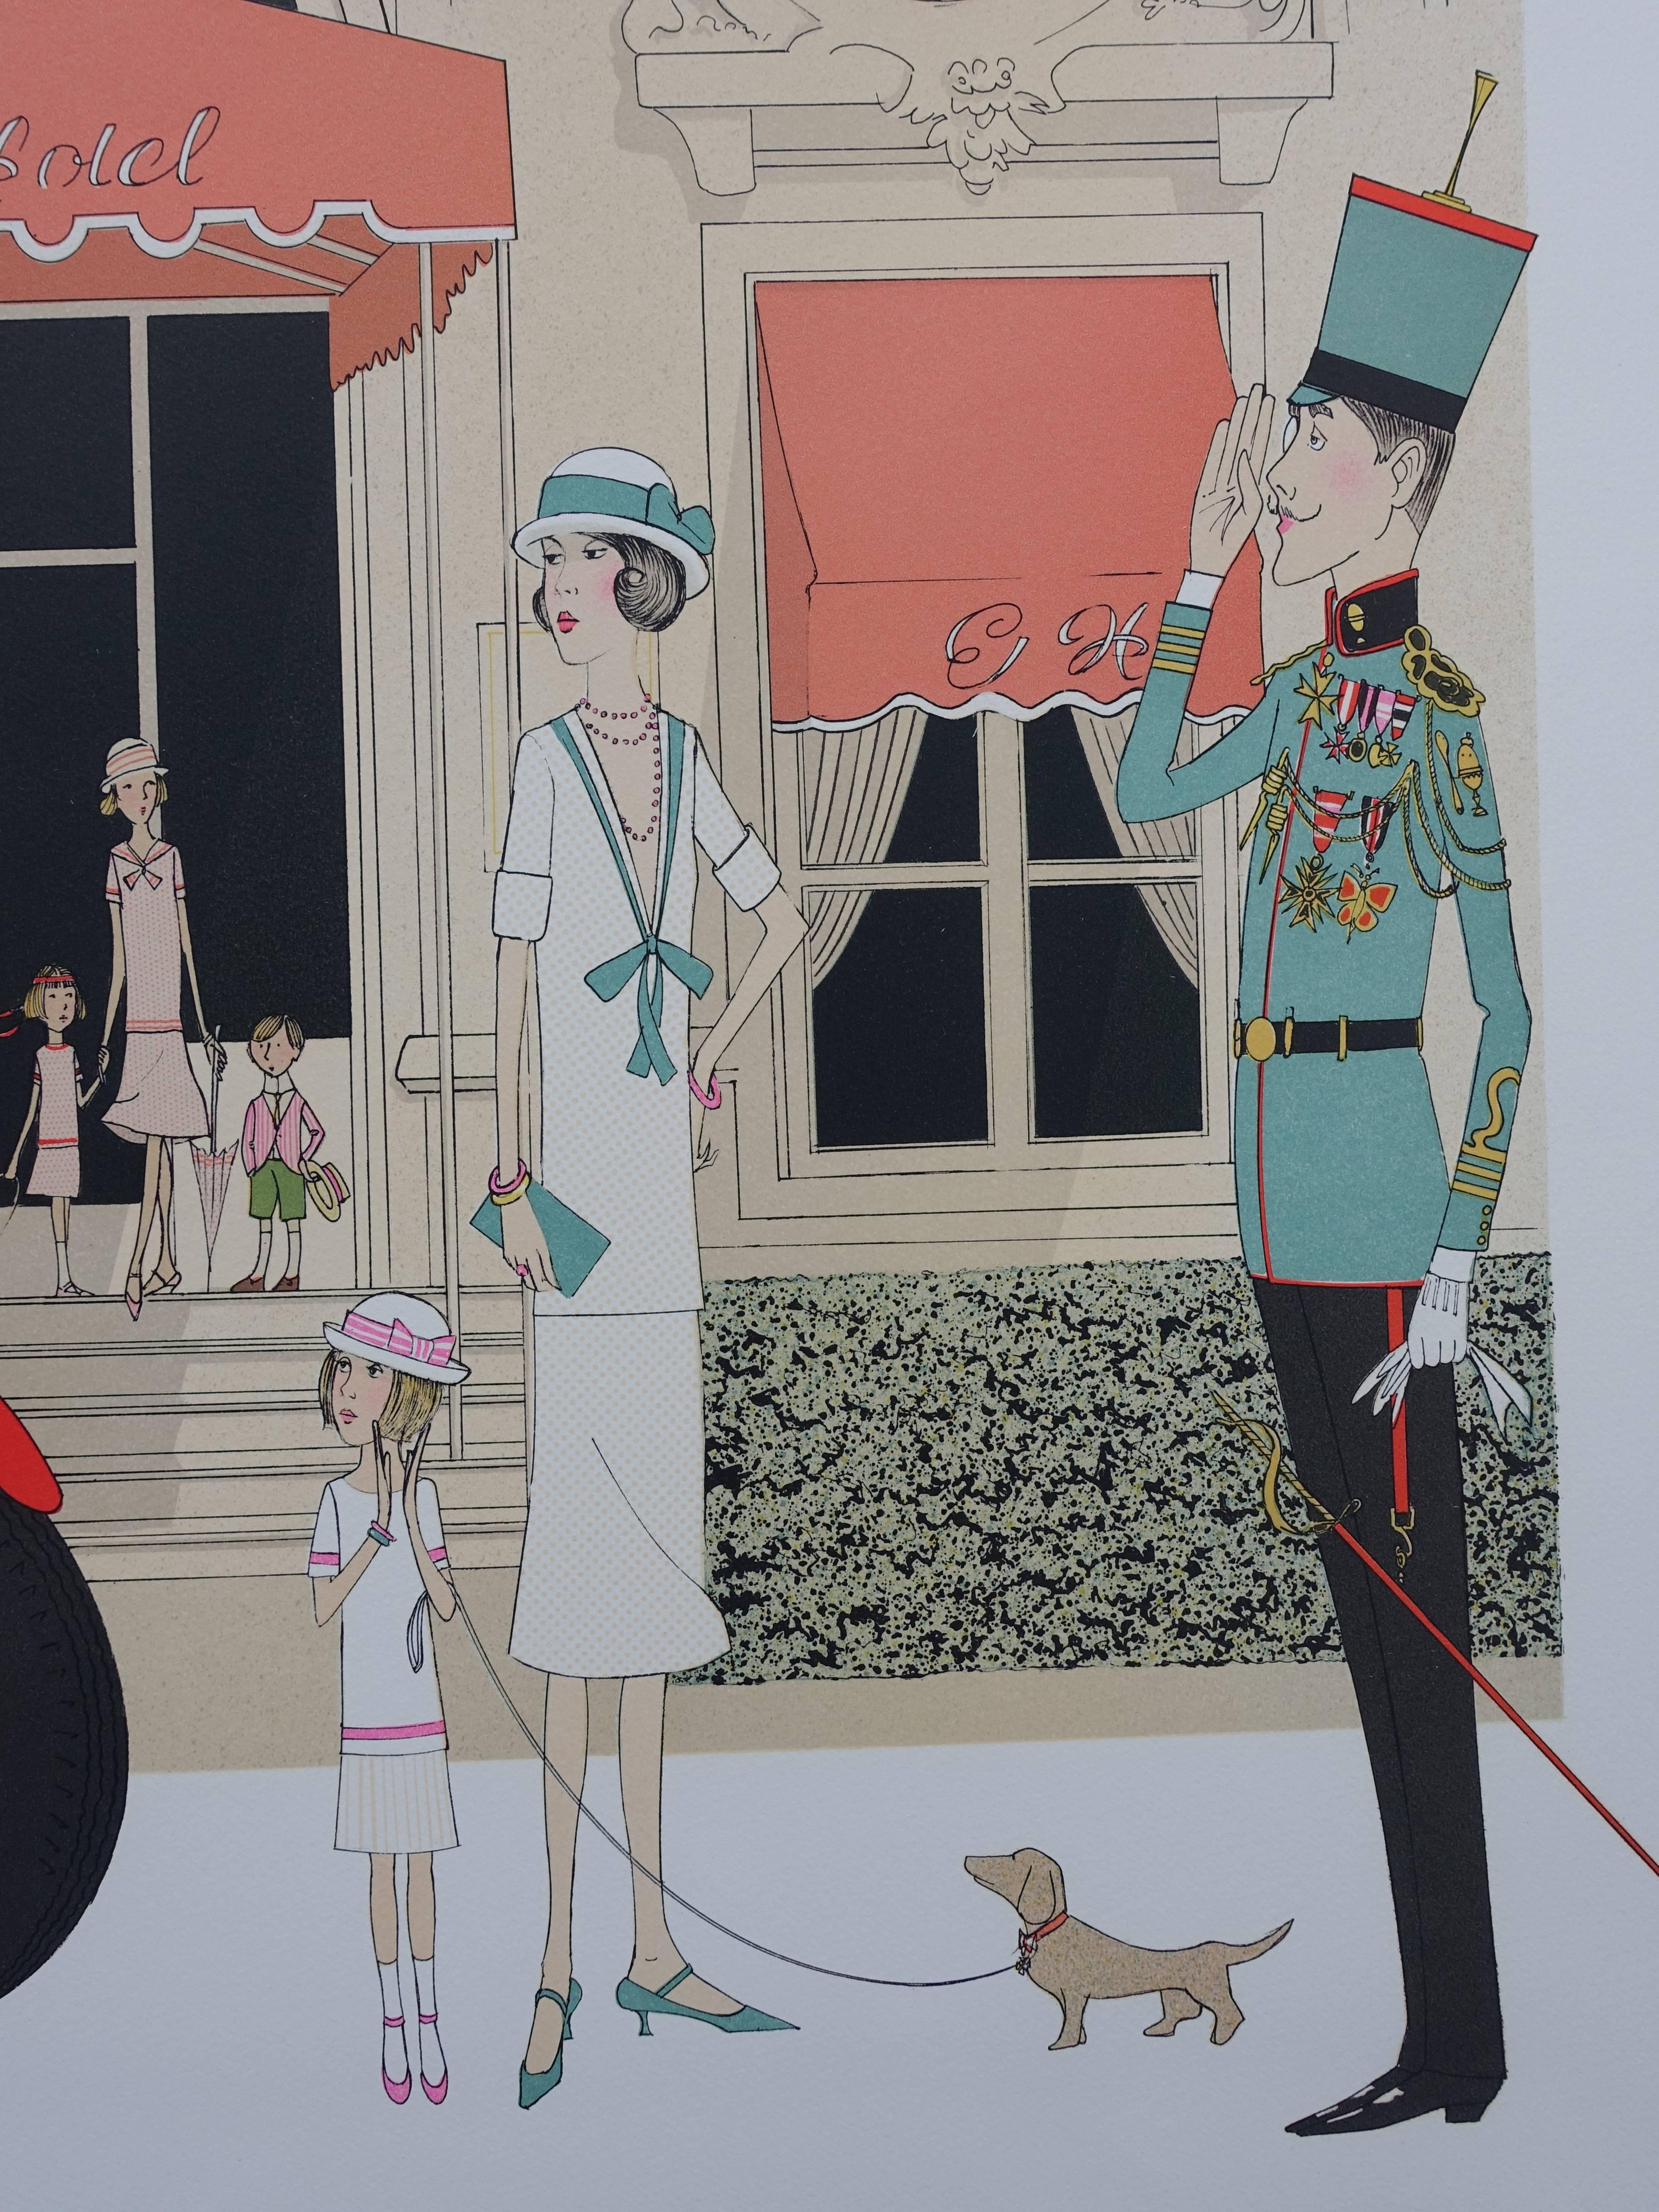 Denis-Paul NOYER
Mercedes 710 - Grand Hotel Cabourg

Original-Lithographie, um 1980
Handsigniert mit Bleistift
Nummeriert / 115 Exemplare
Auf Arches Pergament 75 x 105 cm (ca. 30 x 42 Zoll)

INFORMATIONEN : Das Cabourg Grand Hotel ist ein bekanntes